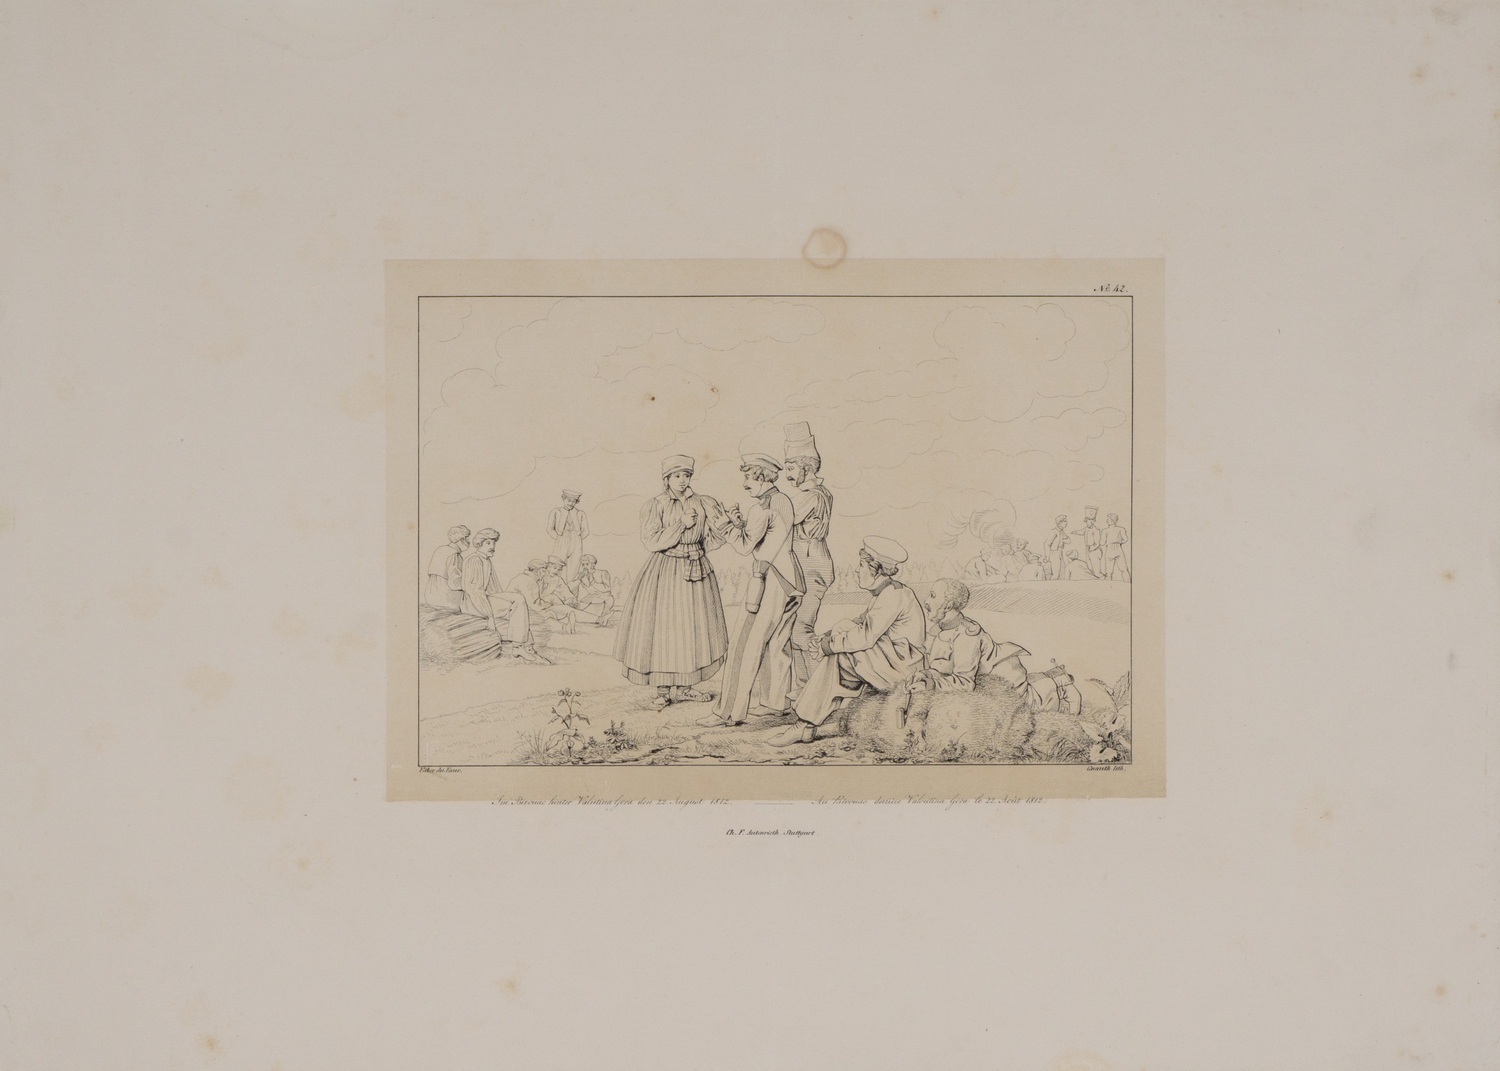 Гнаут А. по рисунку Христиана Вильгельма фон Фабера дю Фора. Литография «Бивуак у Валутиной горы 22 августа 1812 года». 1831 - 1843 годы.